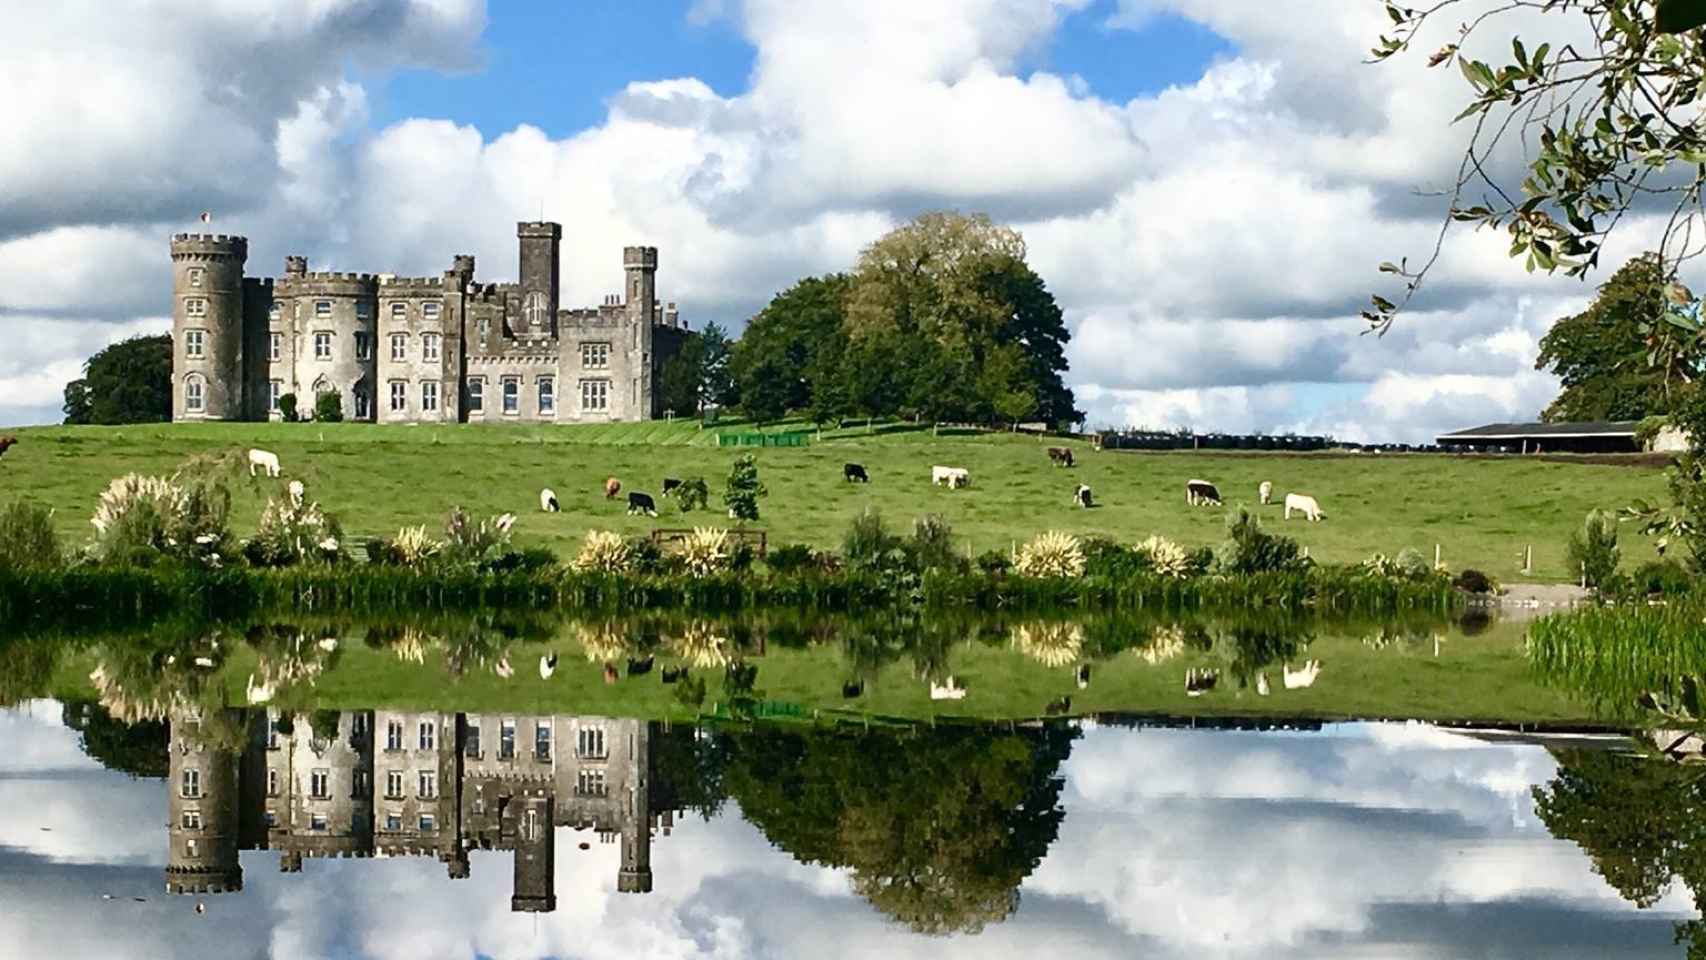 El impresionante castillo de Allen Sanginés-Krause en Irlanda.